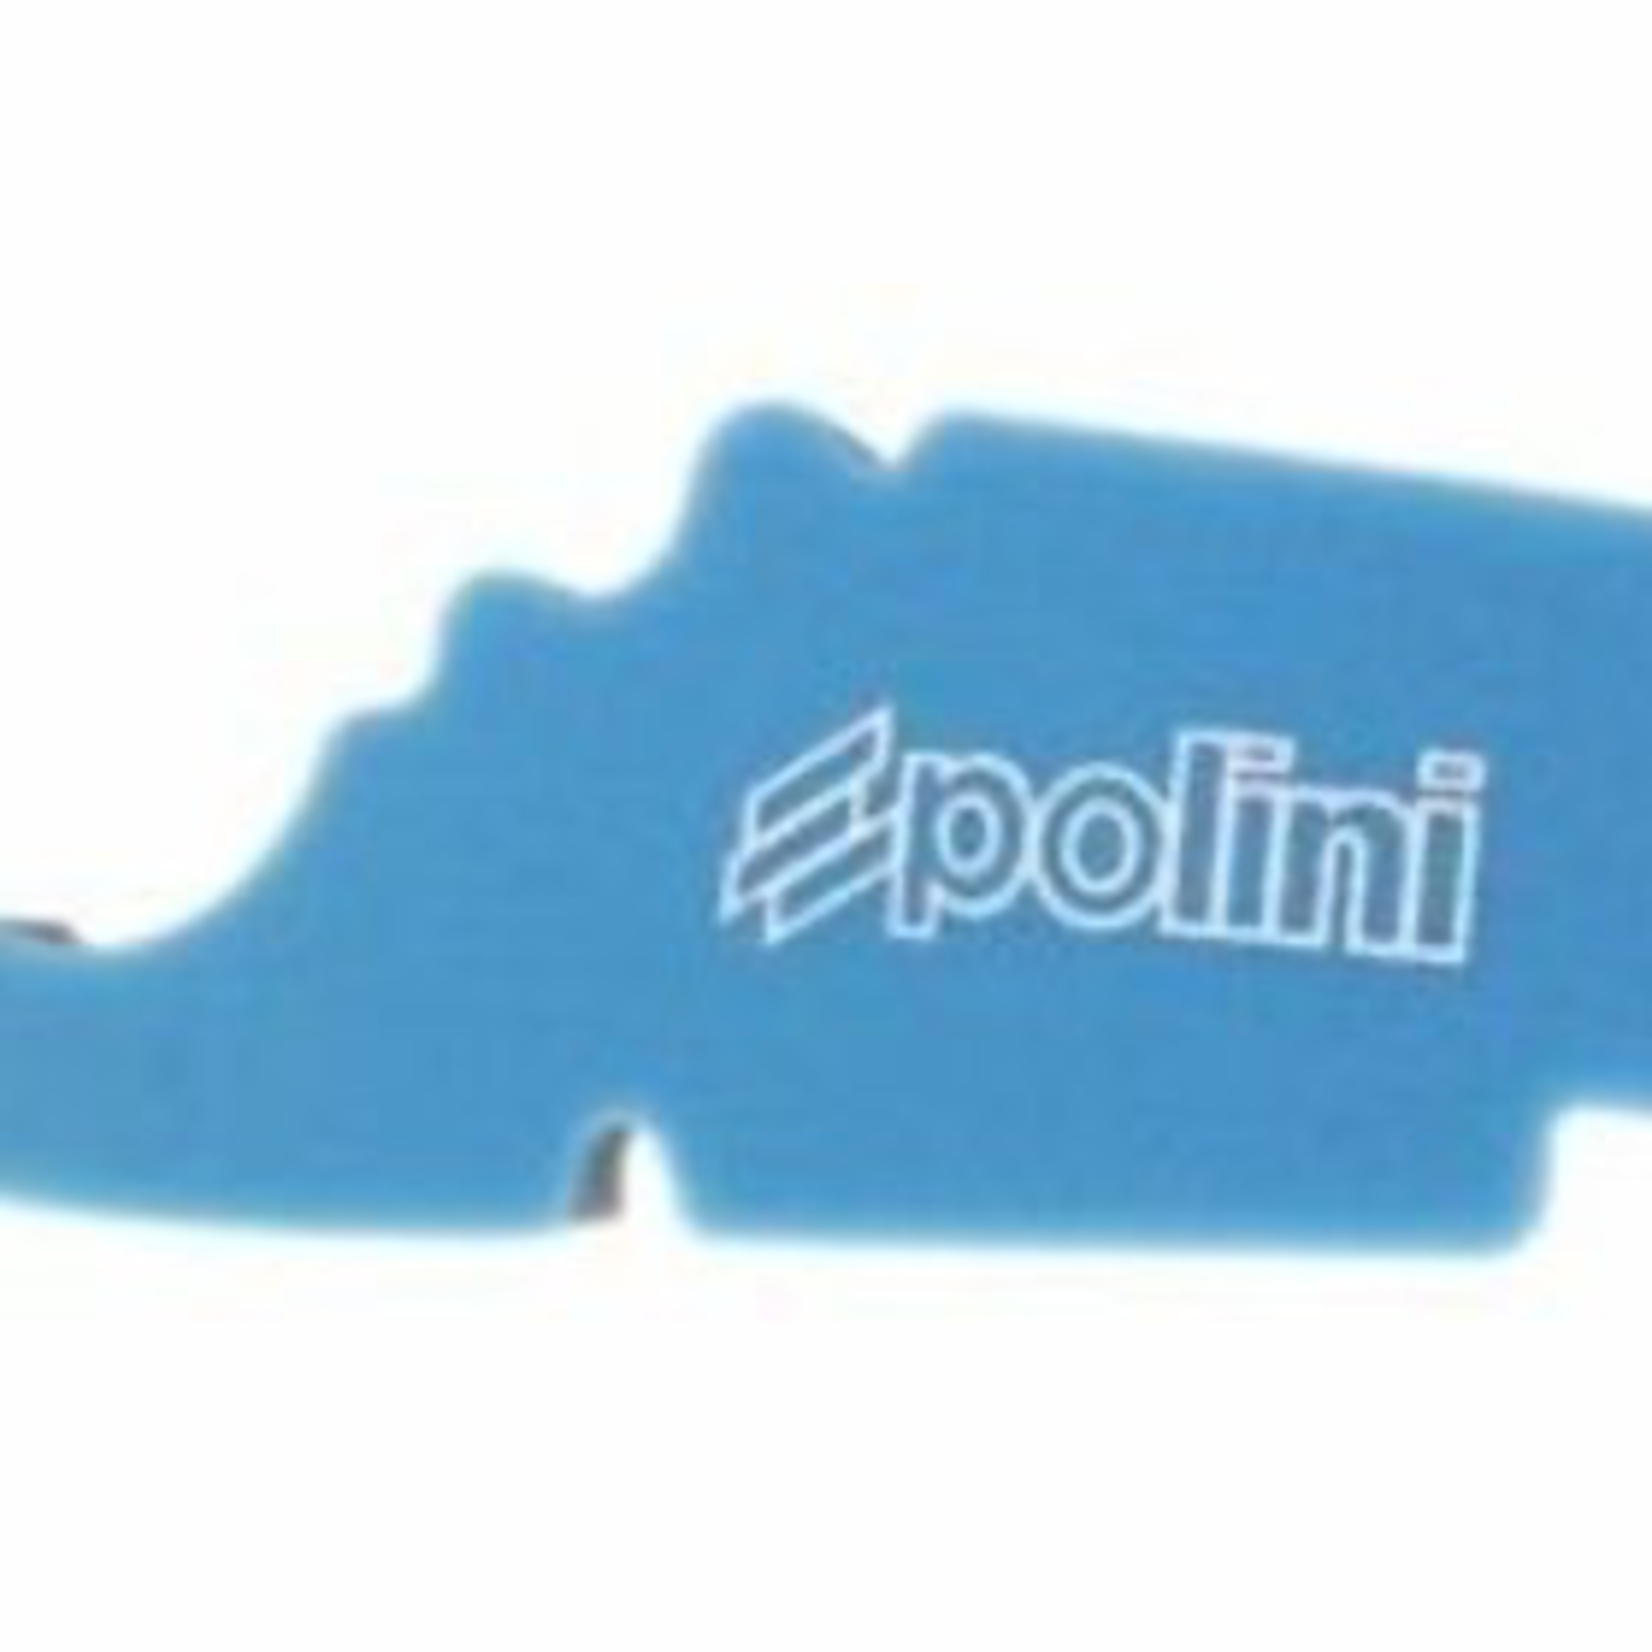 Parts Air Filter, Vespa-Piaggio 50/150 Polini